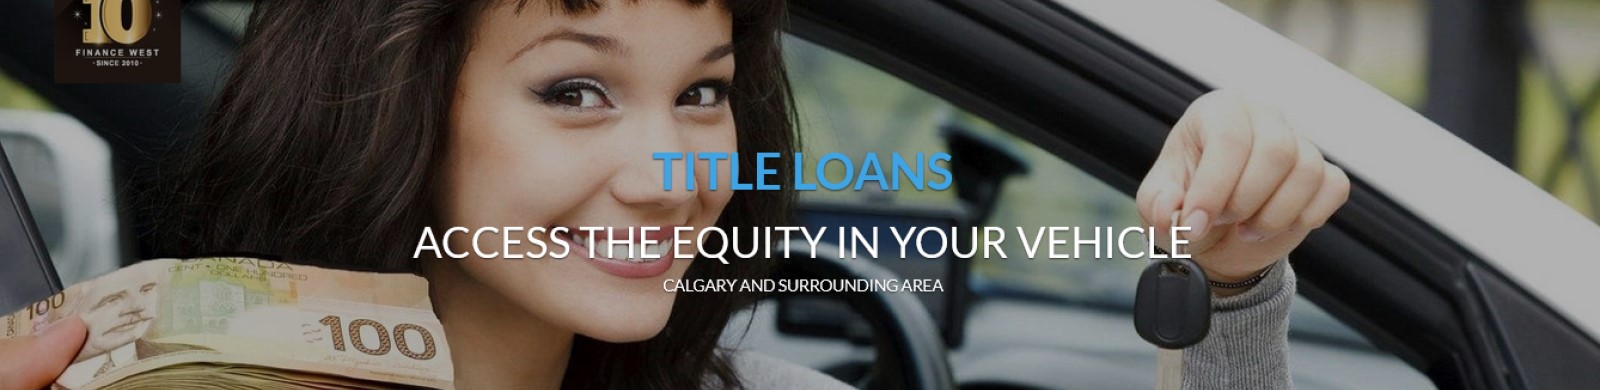 calgary title loans